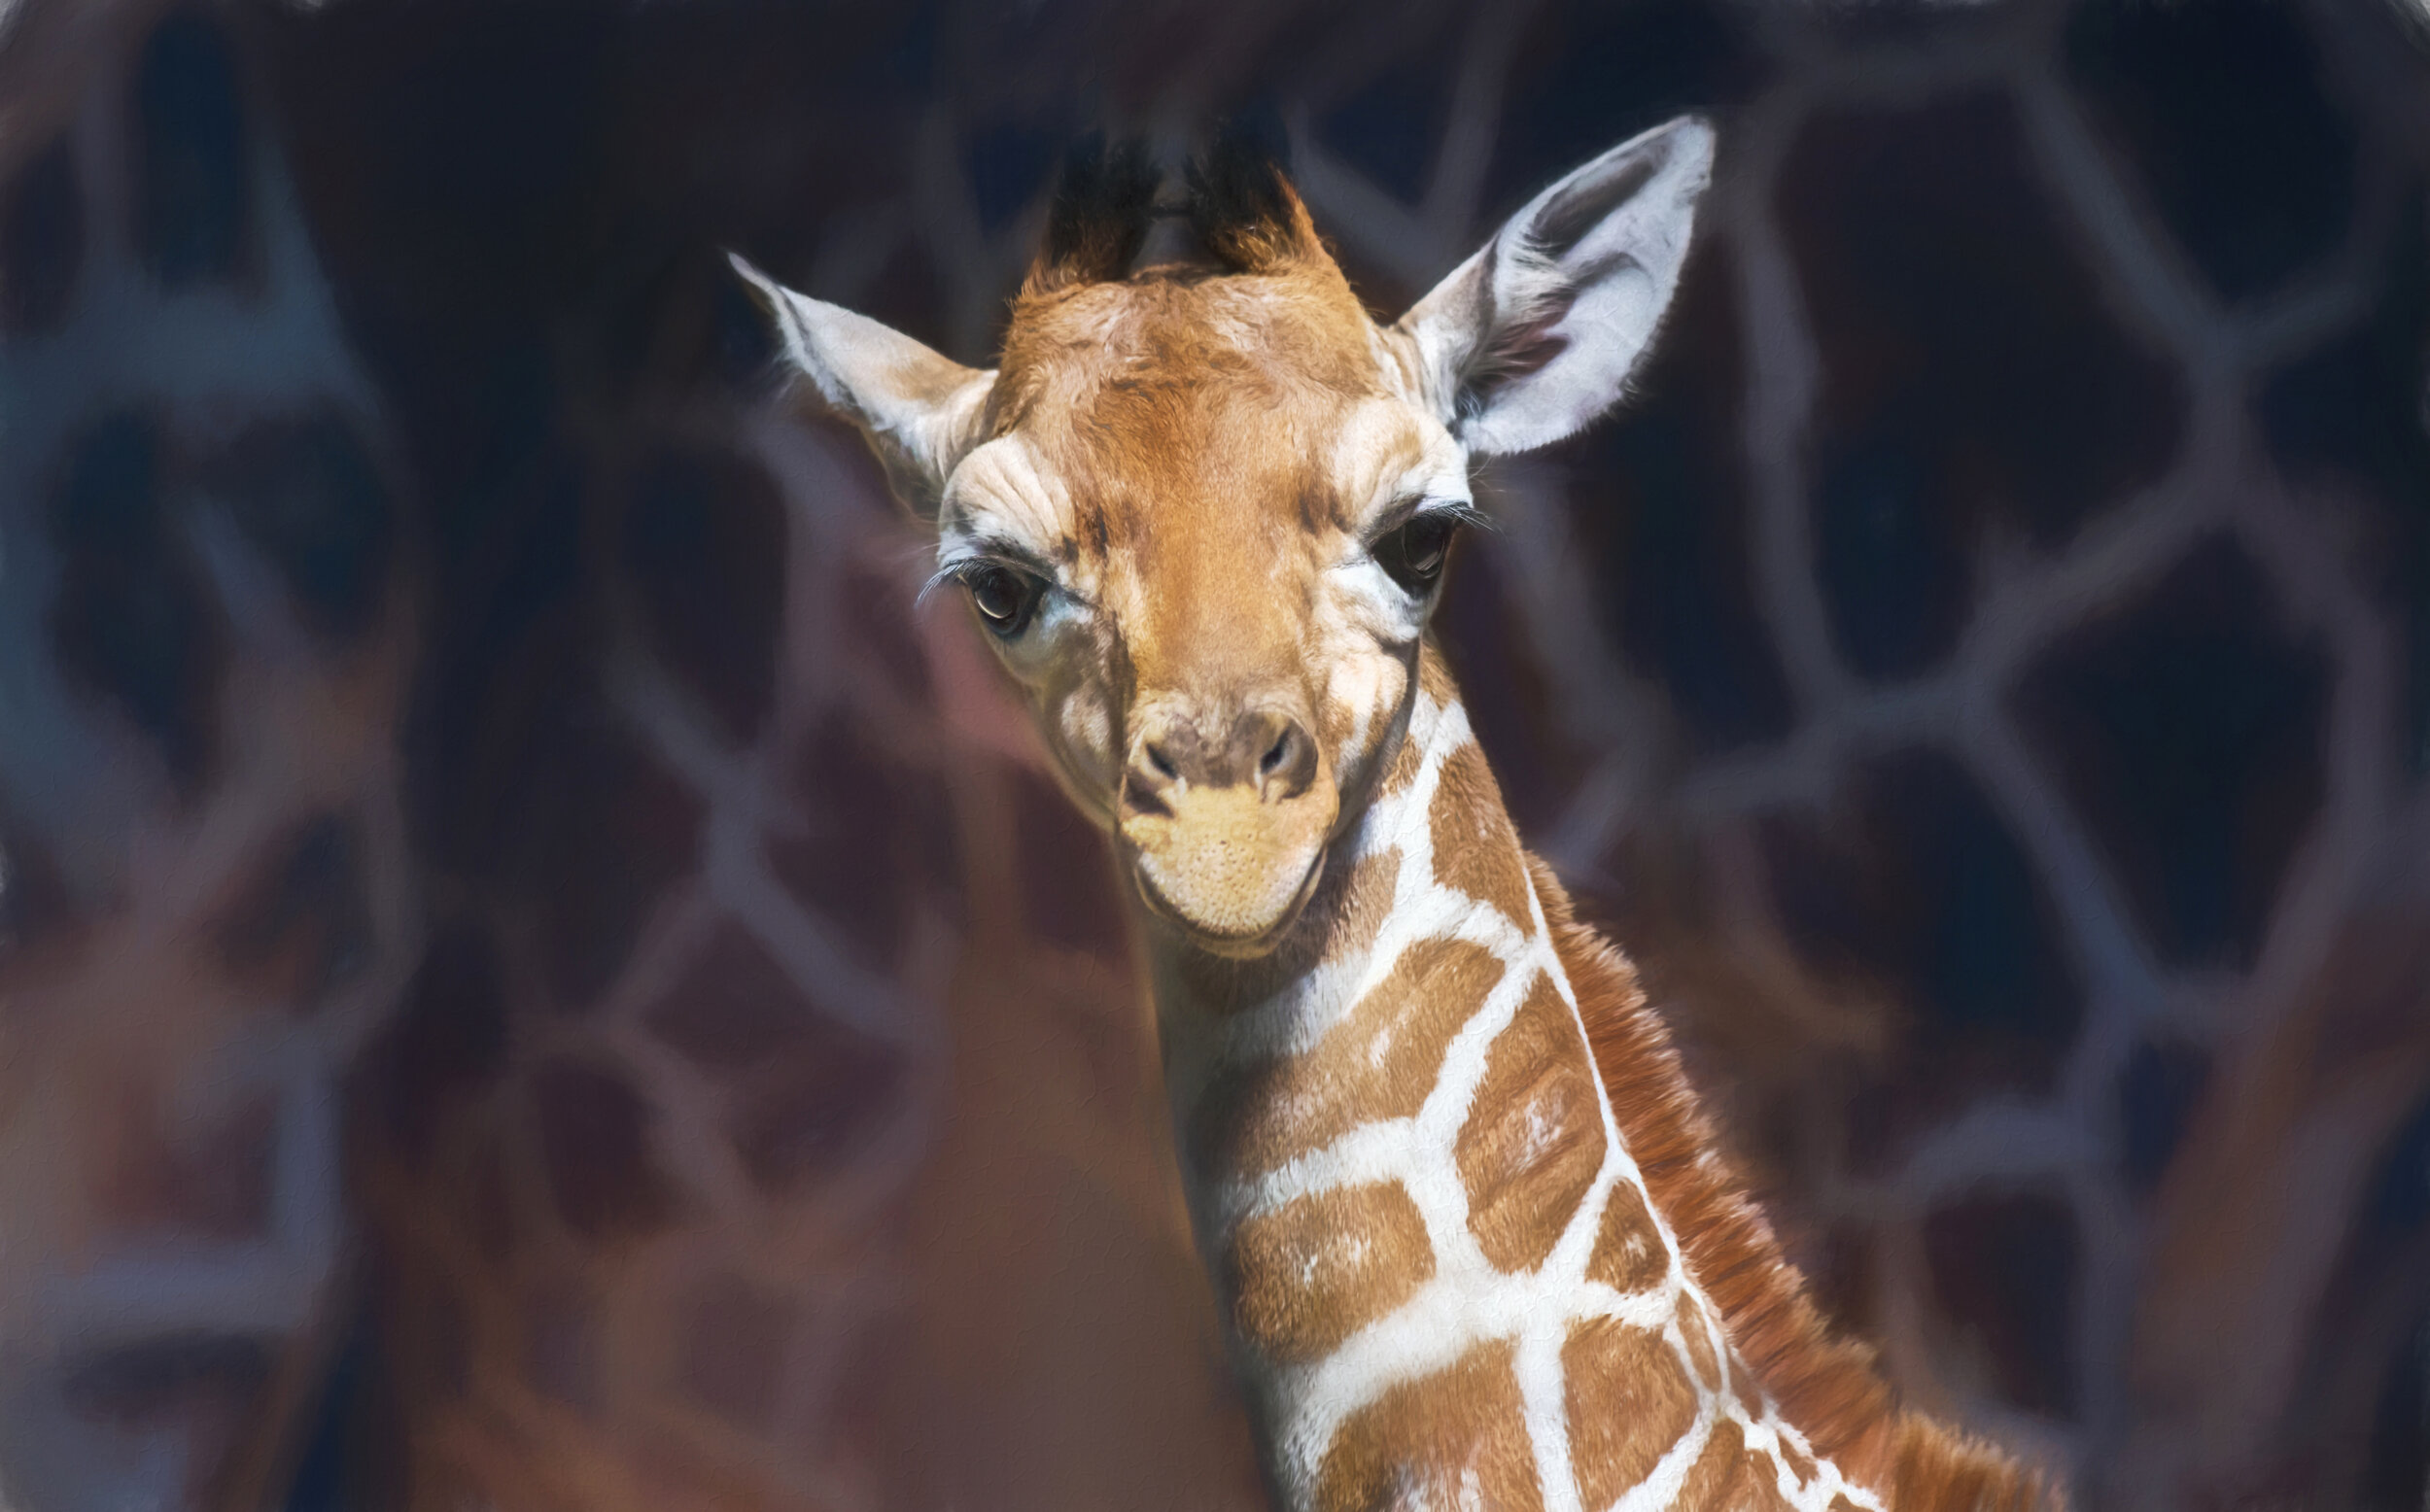 Baby Giraffe processed - Elizabeth Bruders